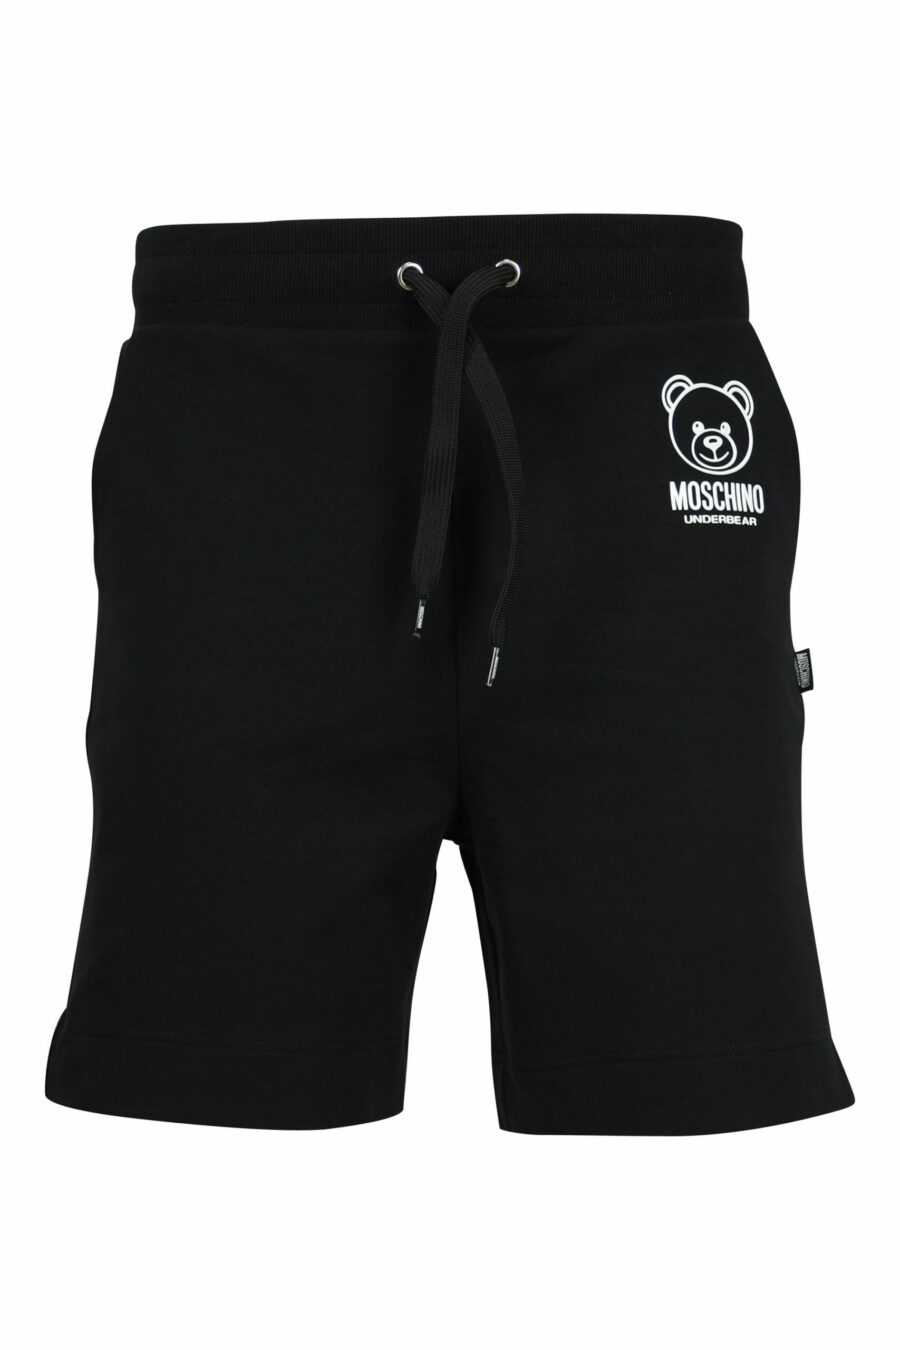 Bas de survêtement noir avec mini-logo ours "underbear" en caoutchouc noir - 667113622200 scaled